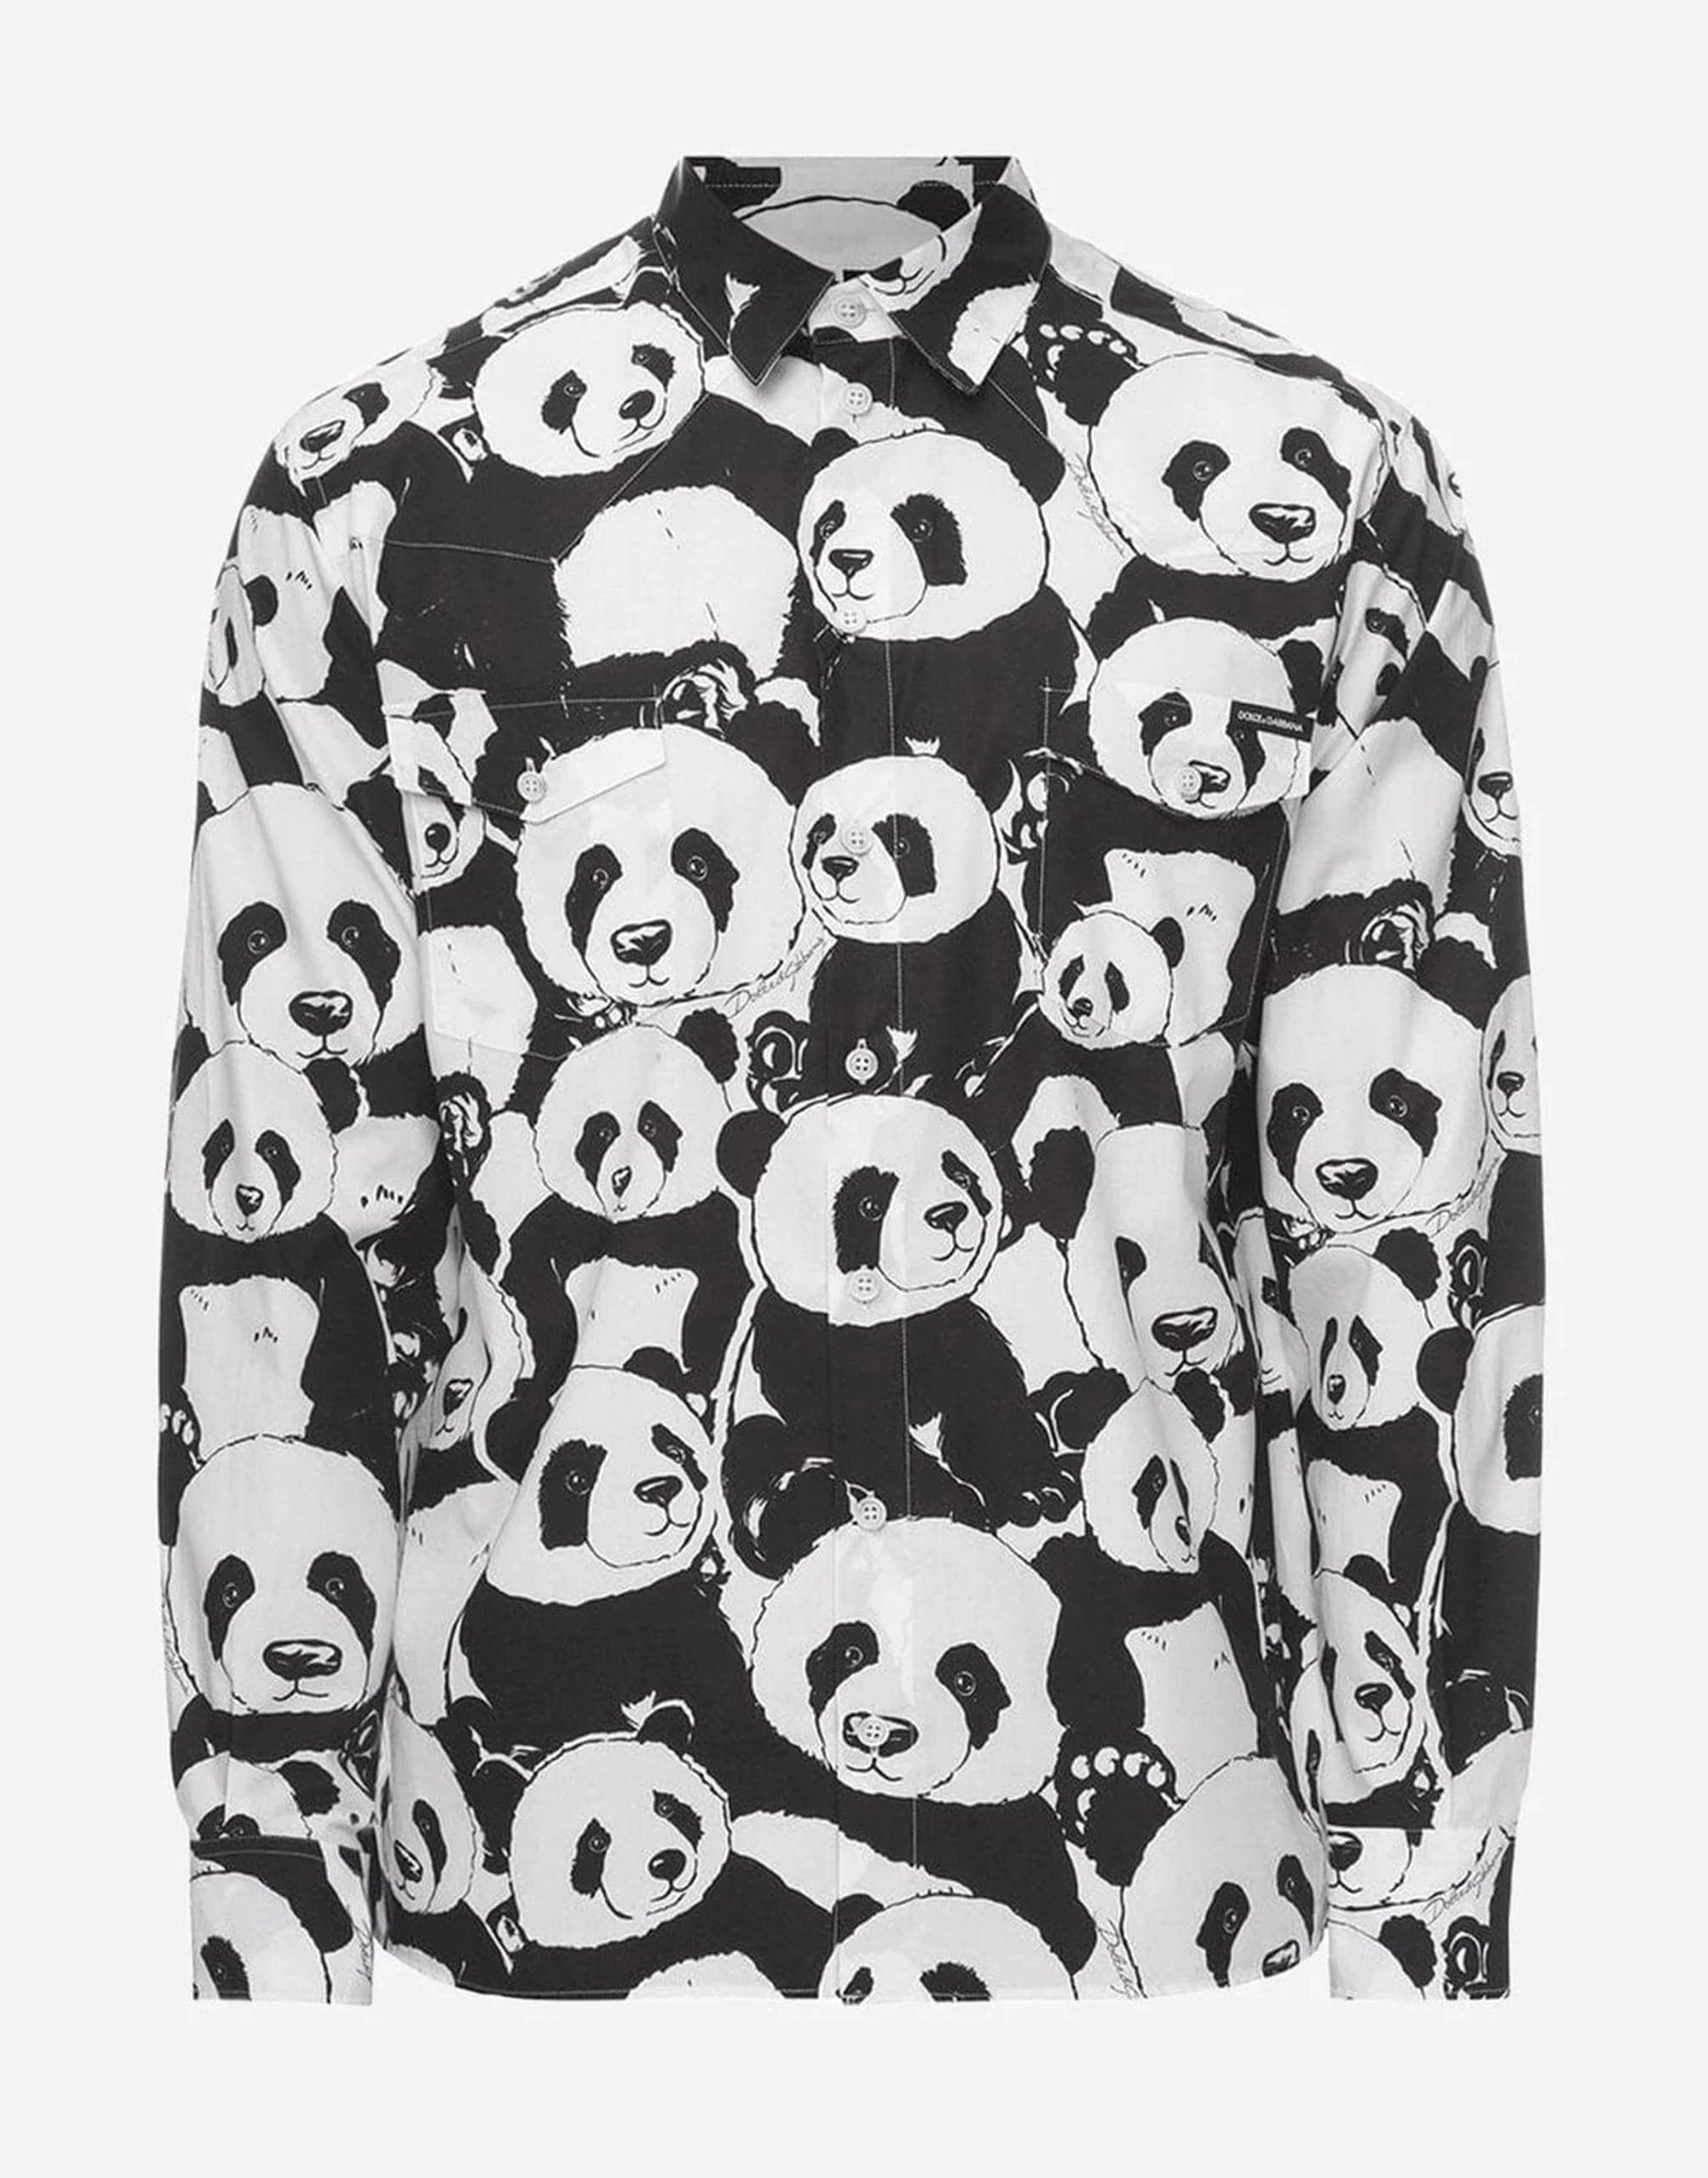 Dolce & Gabbana Panda-Print Casual Shirt